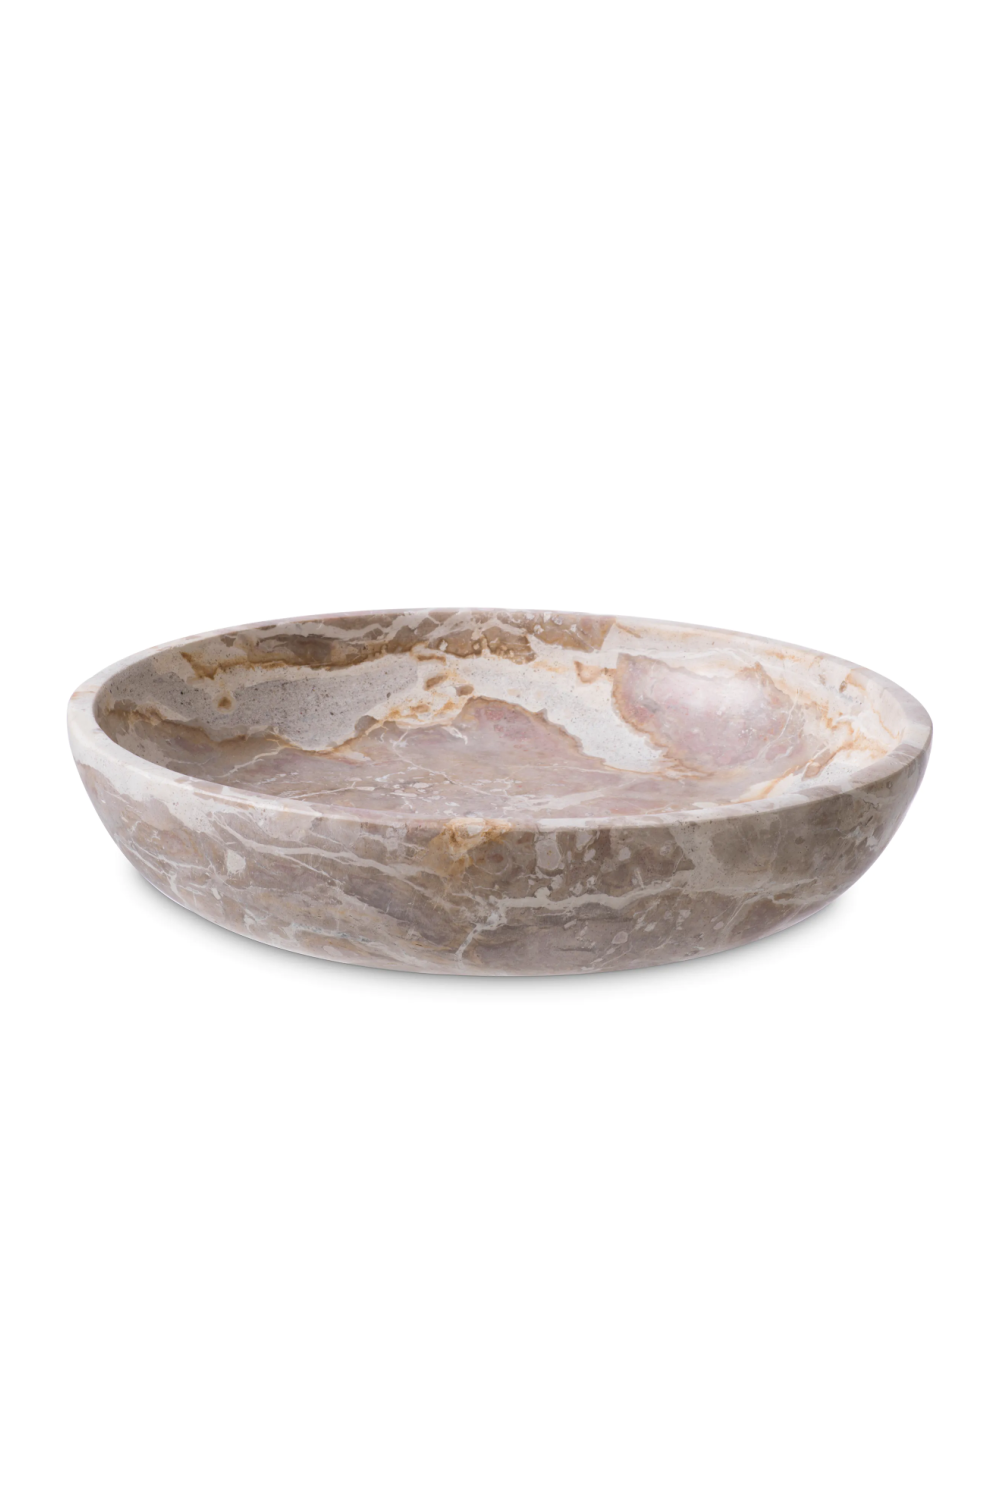 Stoneware Minimalist Bowl | Eichholtz Revolt | Oroa.com